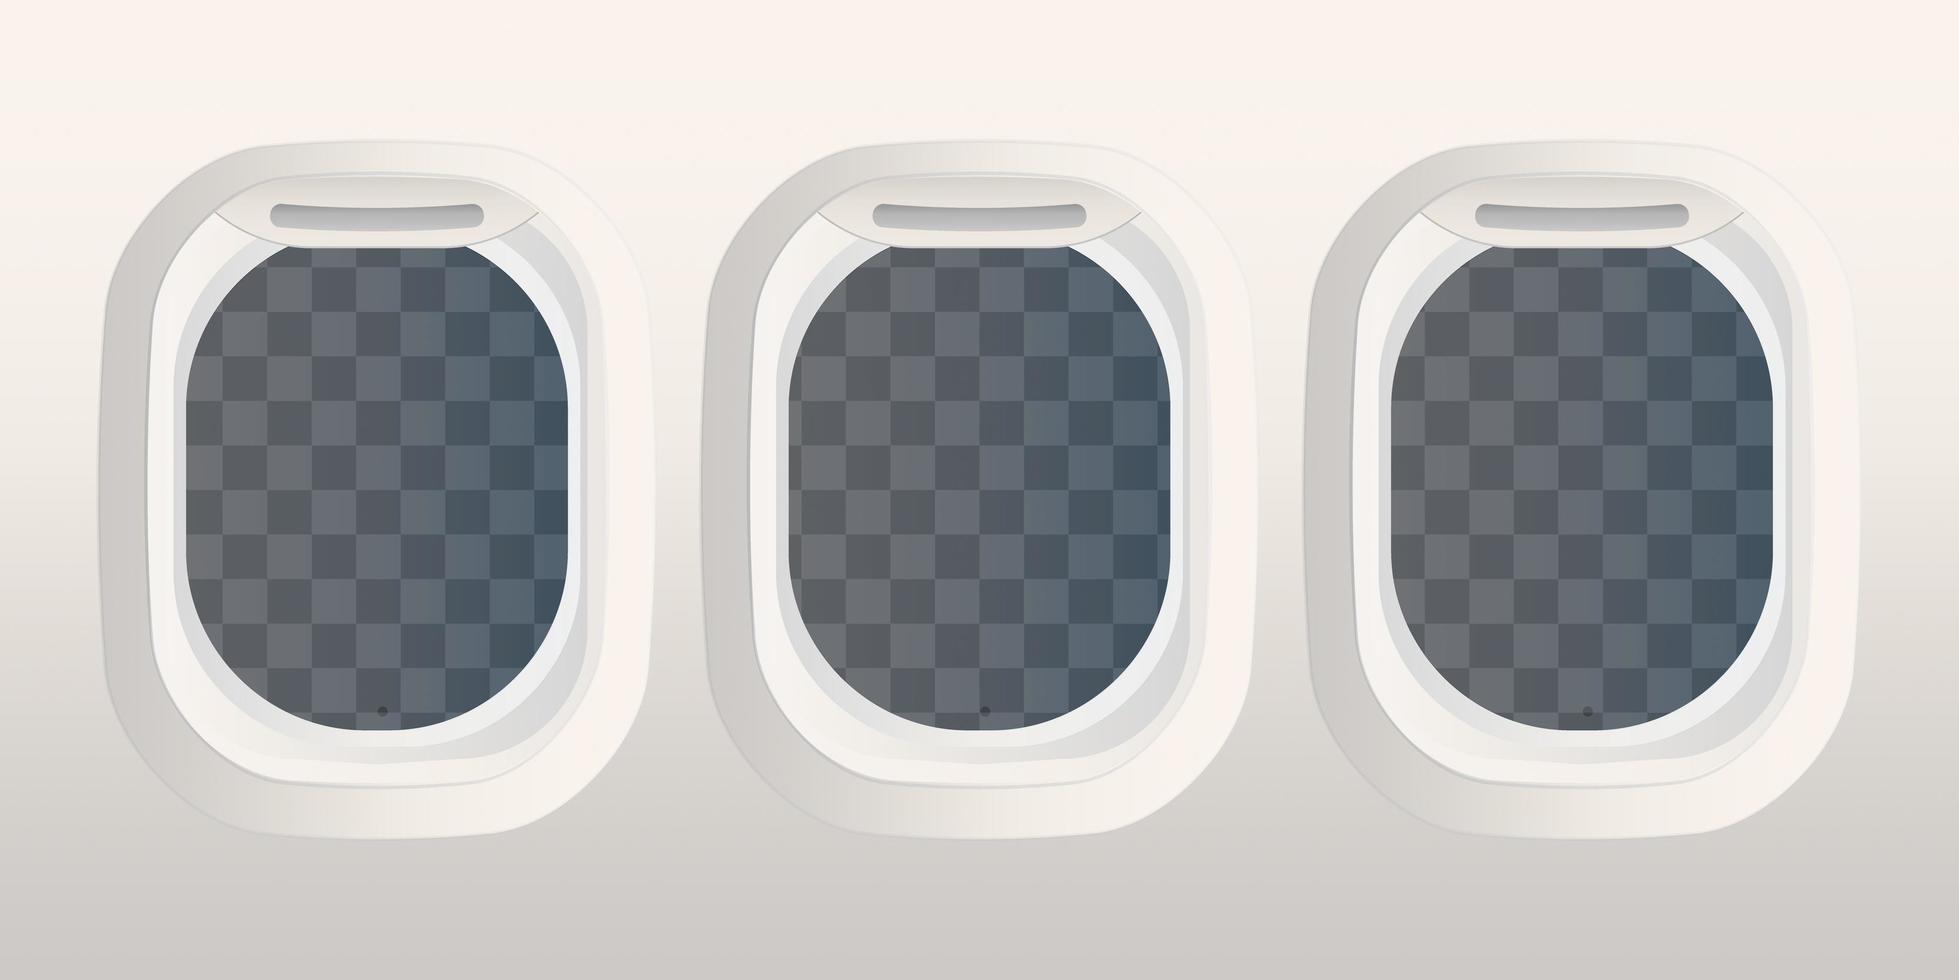 hublots rectangulaires réalistes avec verre transparent. fenêtre d'avion et de navette spatiale. illustration vectorielle vecteur